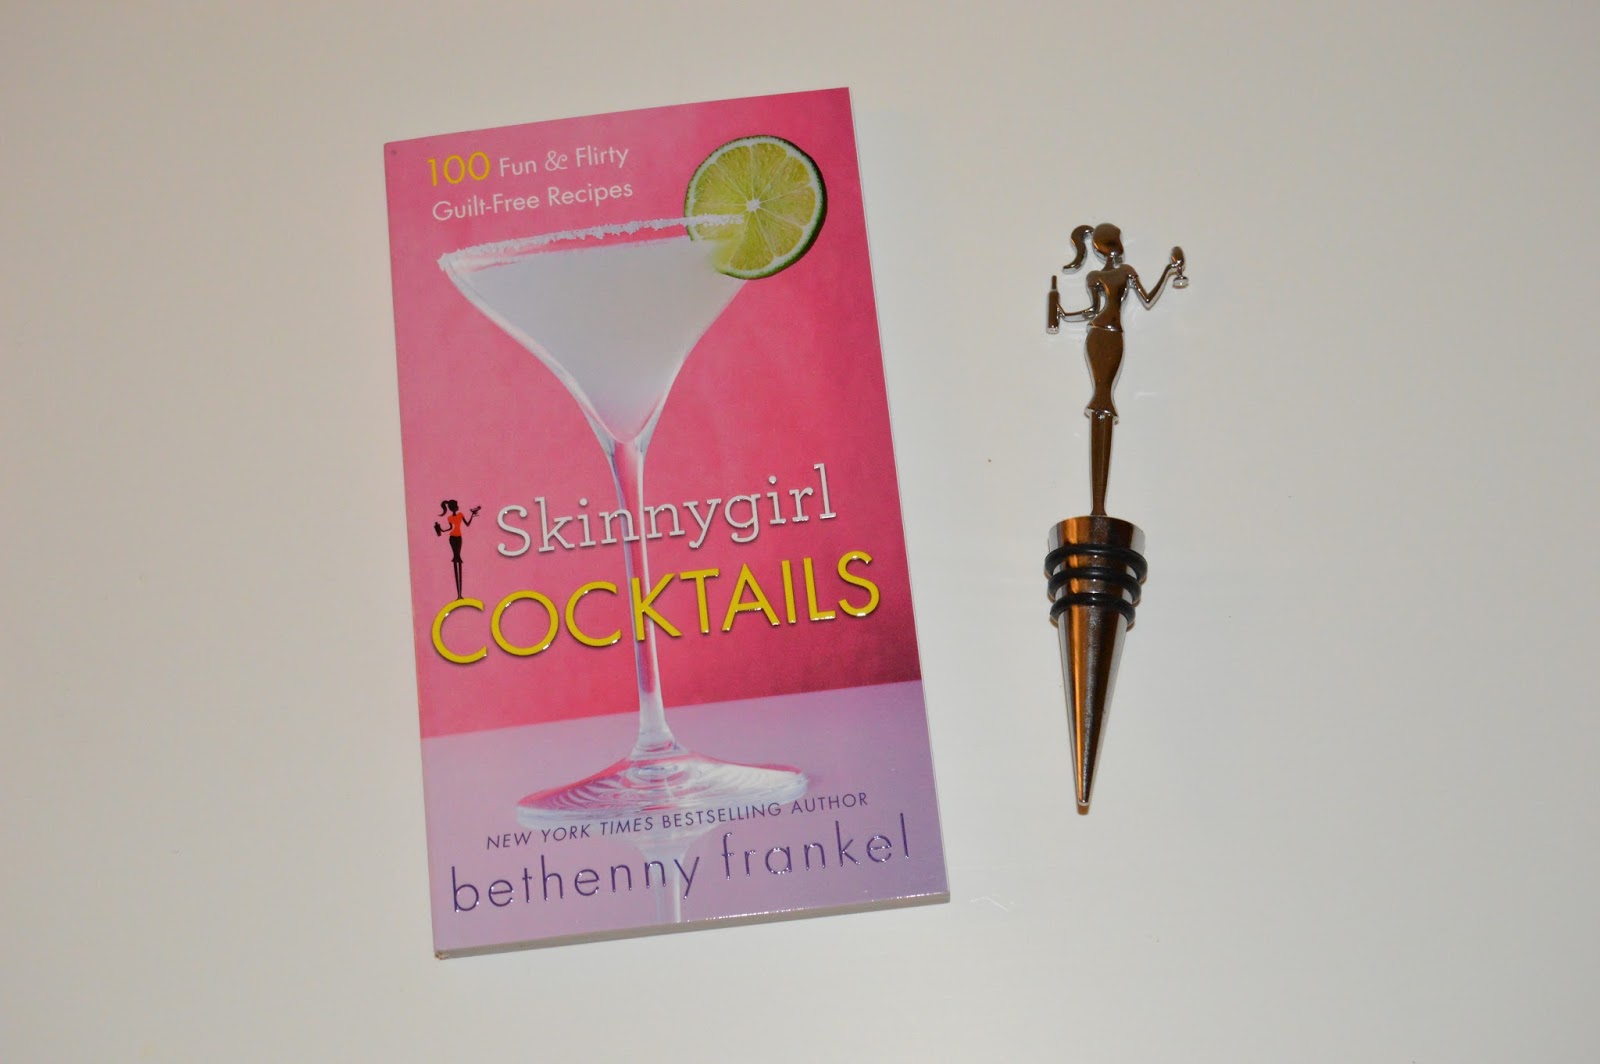 Skinnygirl cocktails, 2013-05-17